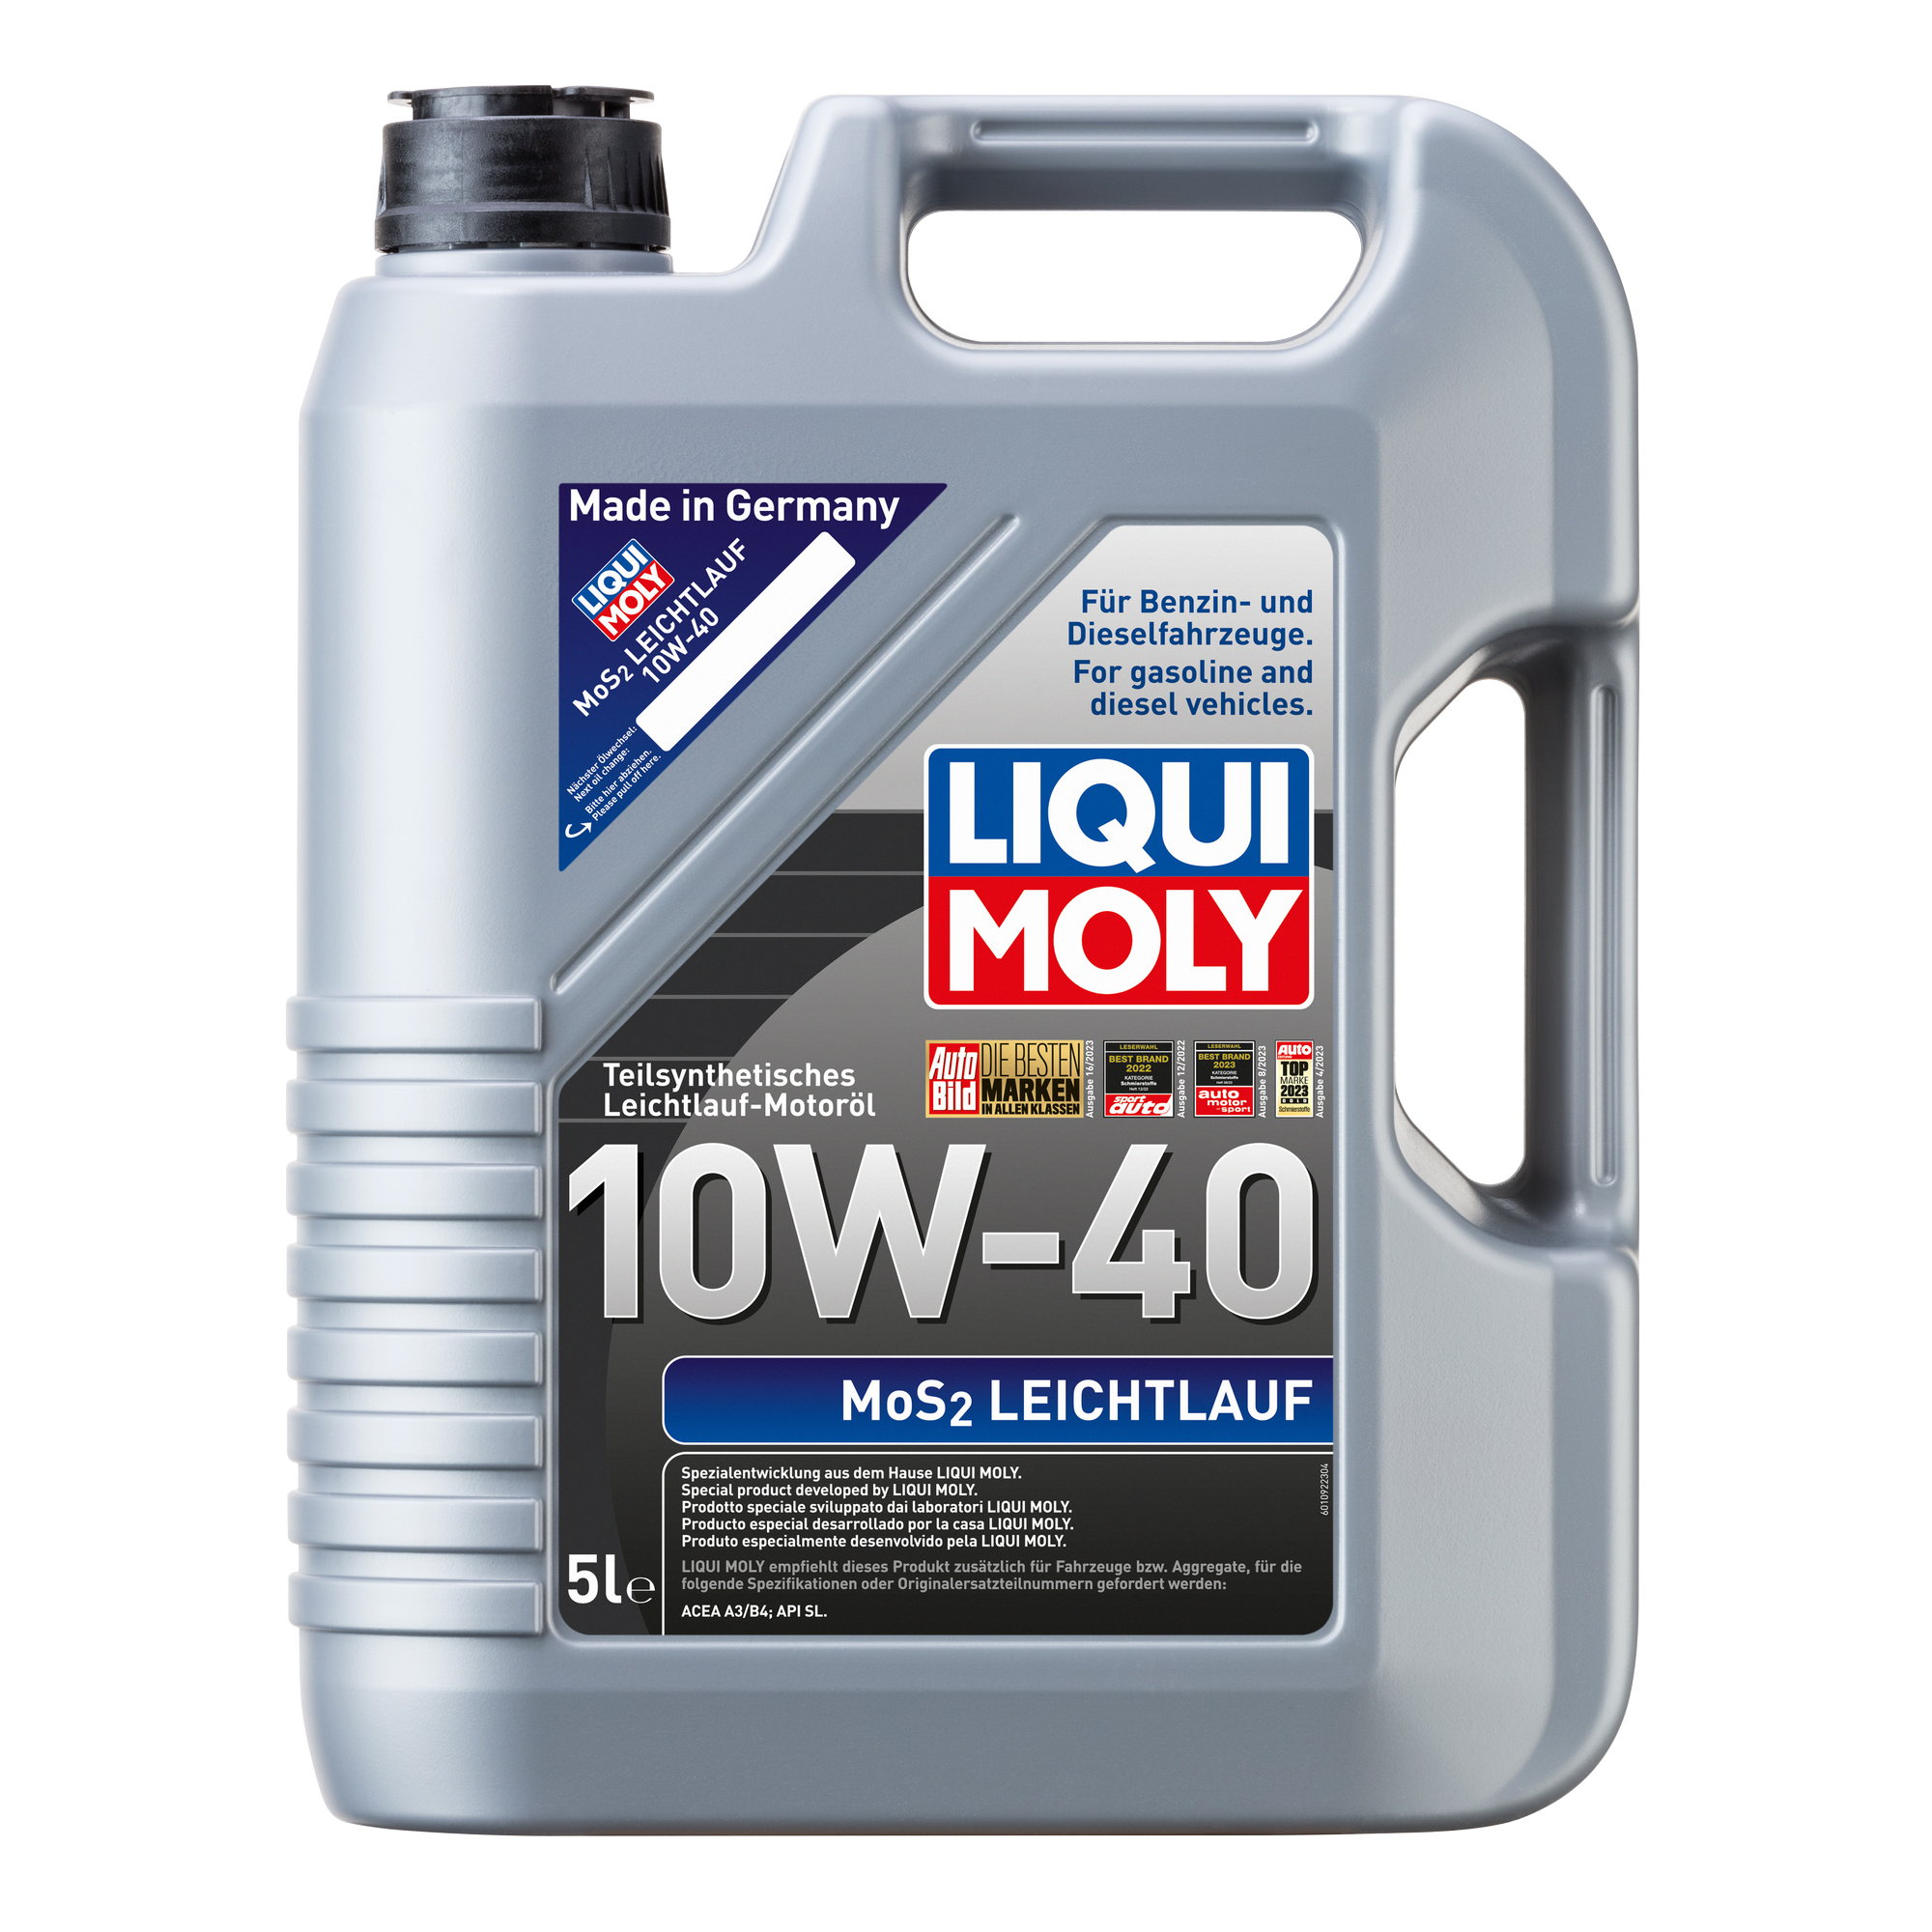 Leichtlauf-Motoröl MoS₂ '10W-40' 5 l + product picture